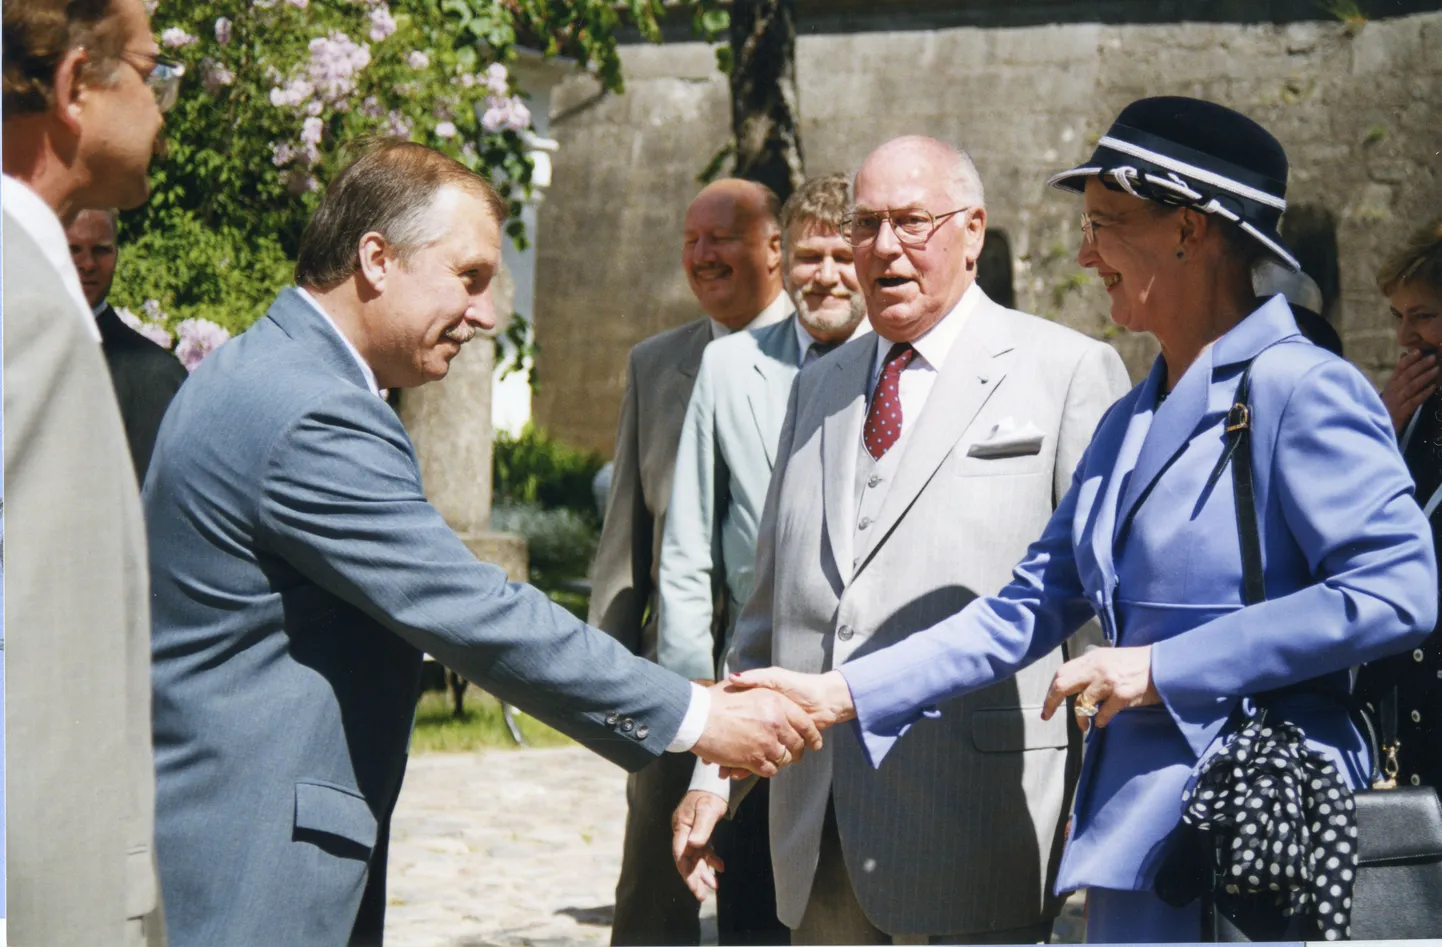 15. juunil 2001 tutvustas president Lennart Meri linnust ja muuseumi Taani kuninganna Margrethe II-le koos abikaasaga.